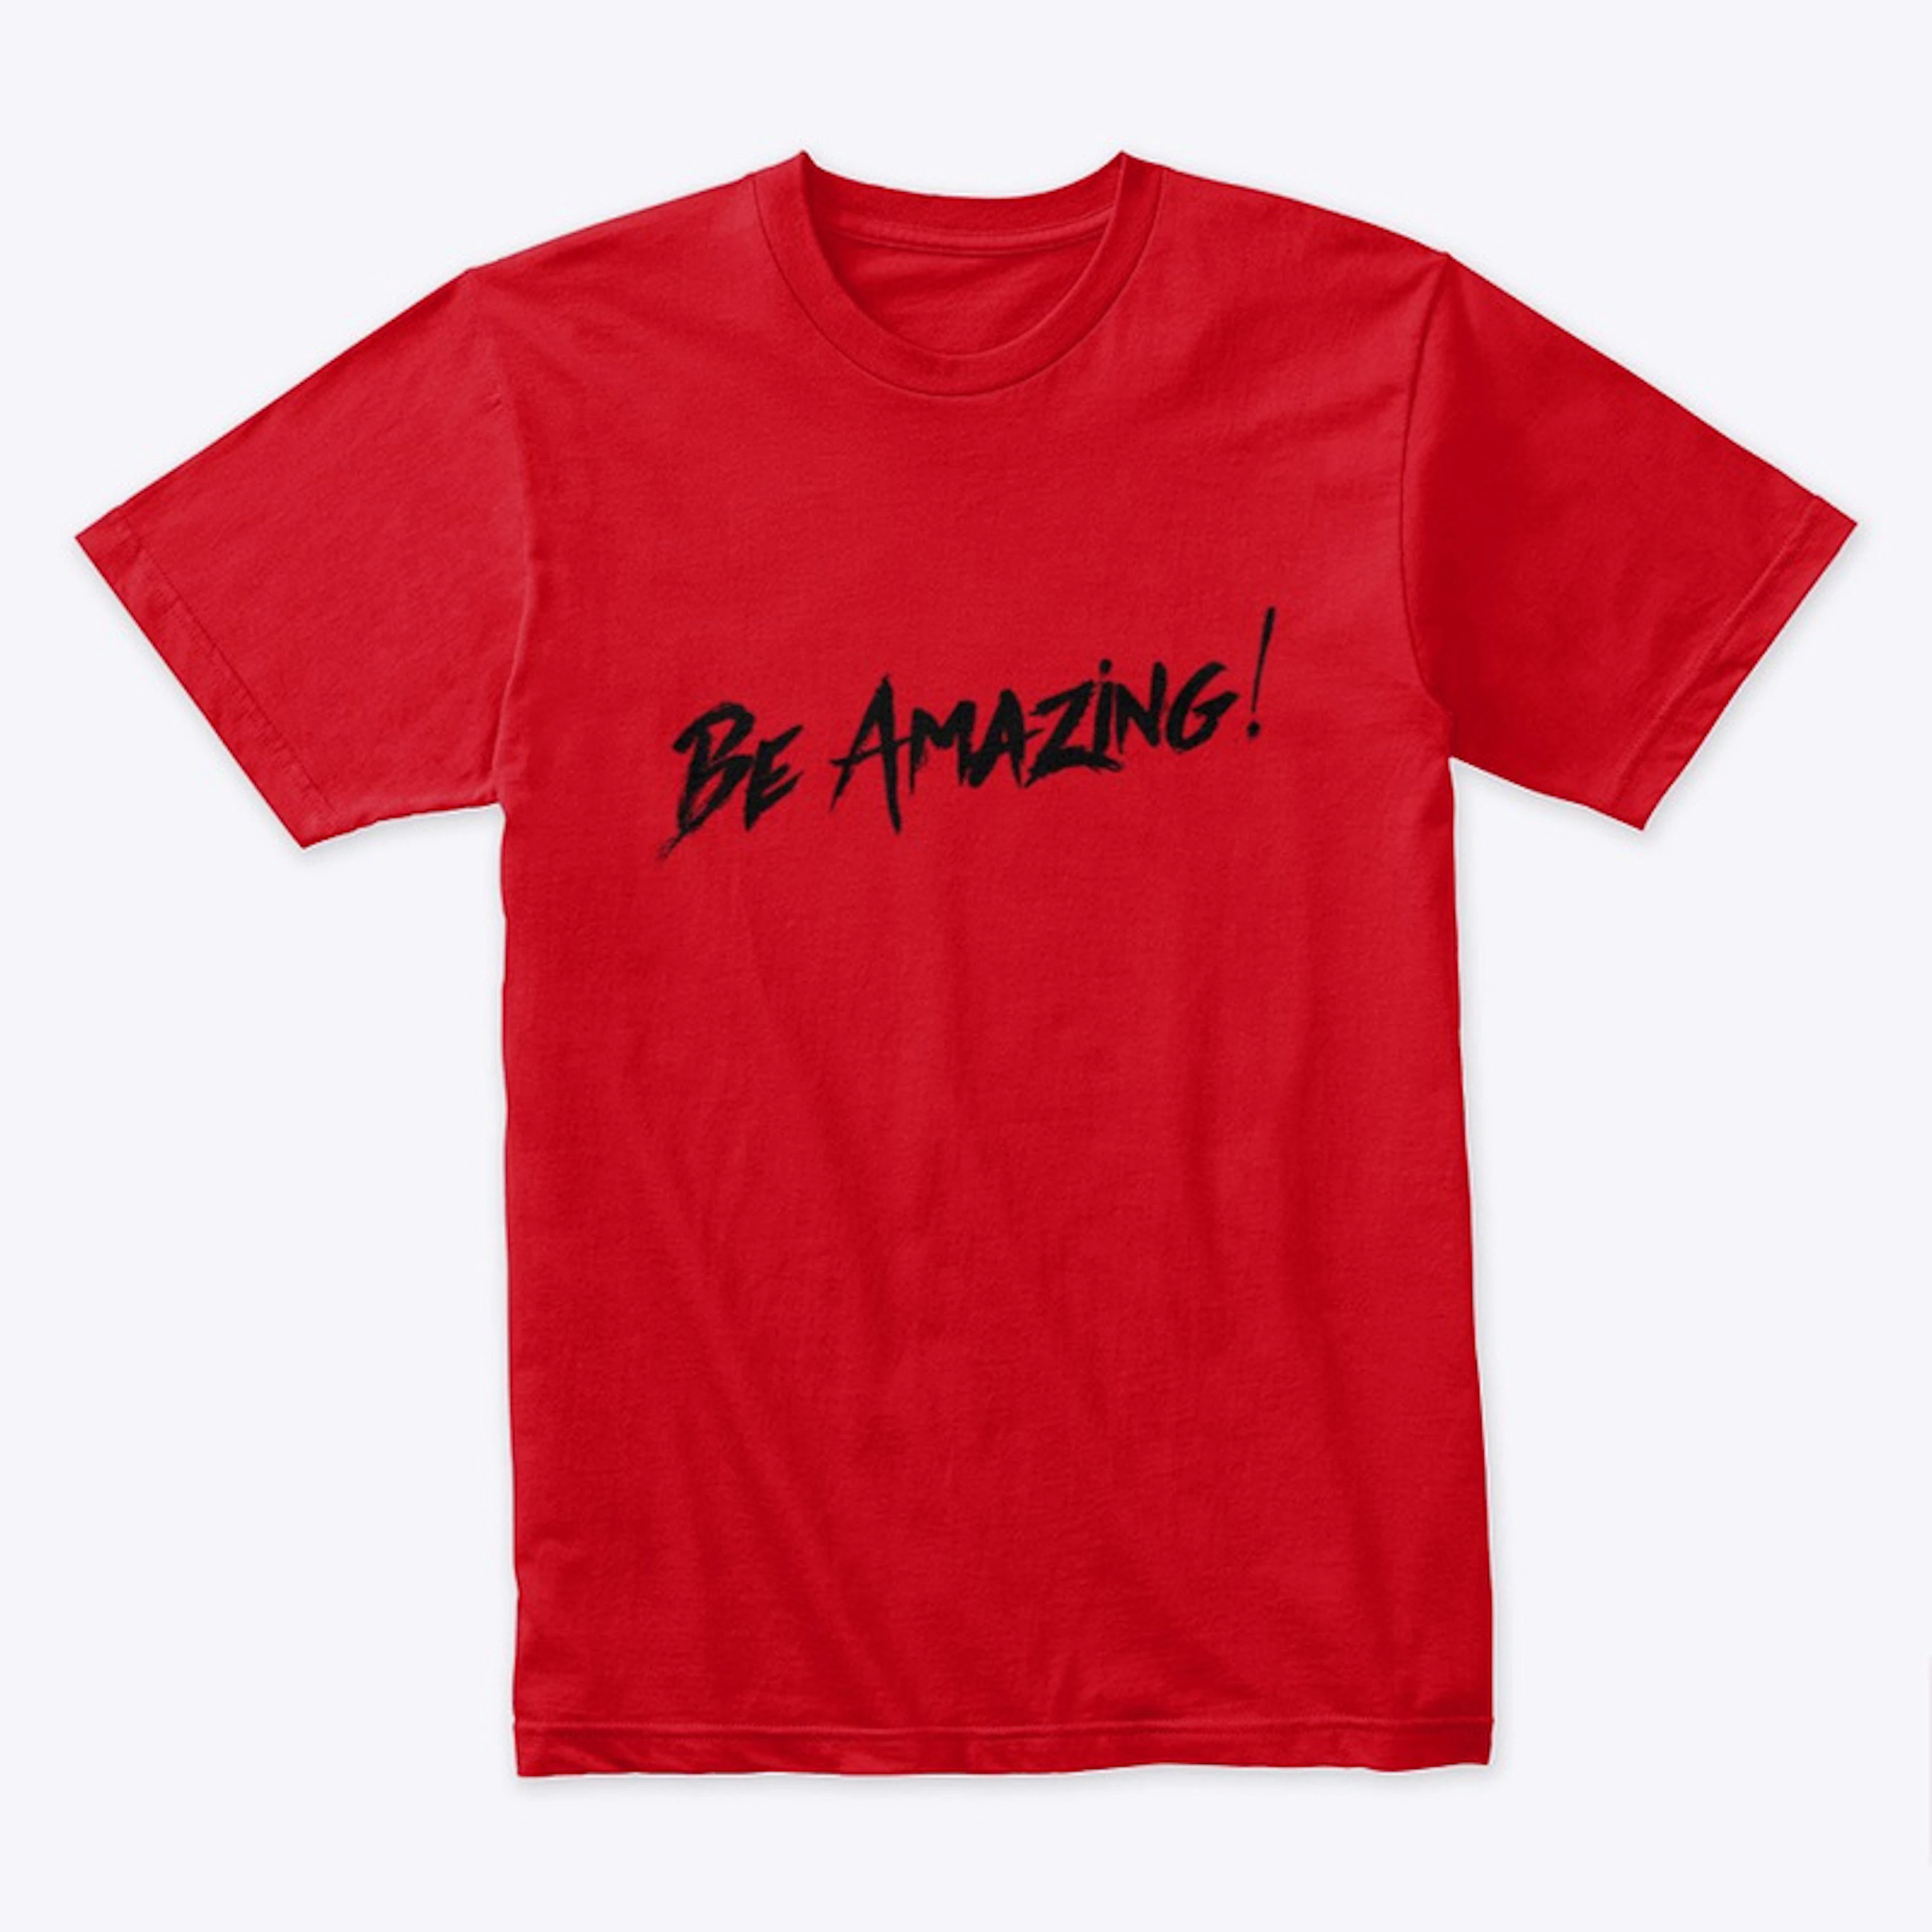 Be Amazing!